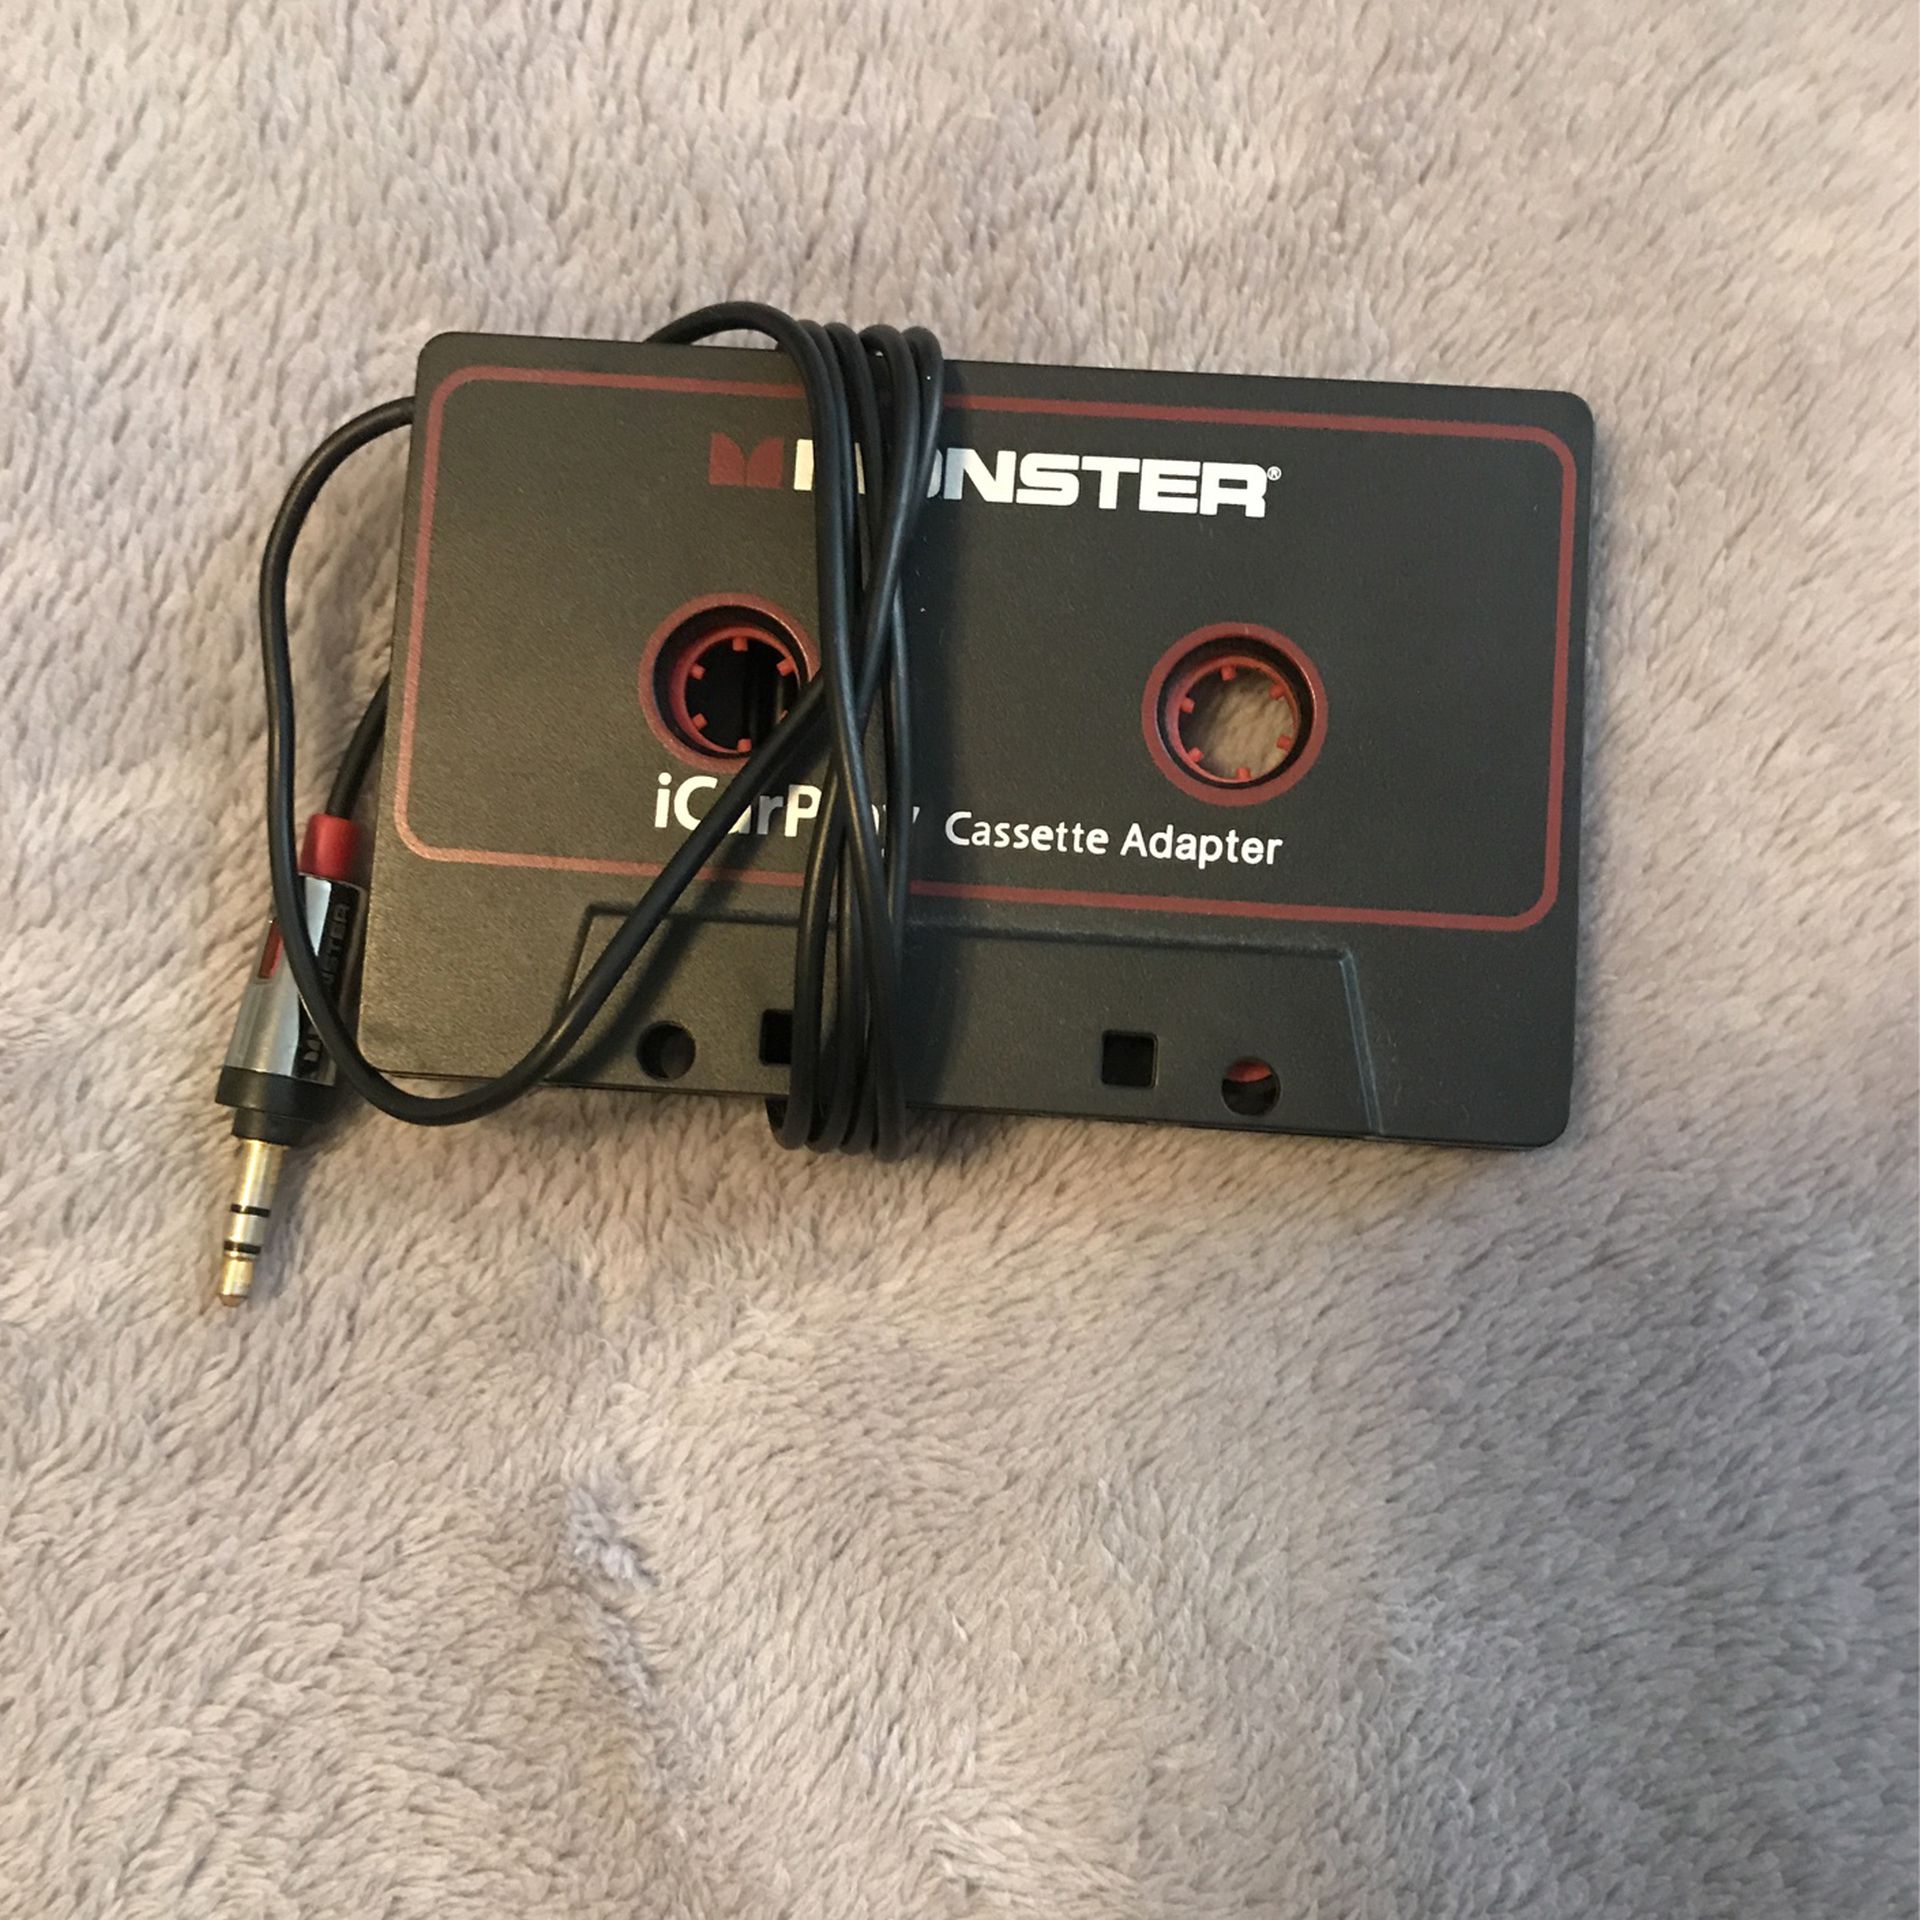 Monster iCarPlay cassette adapter